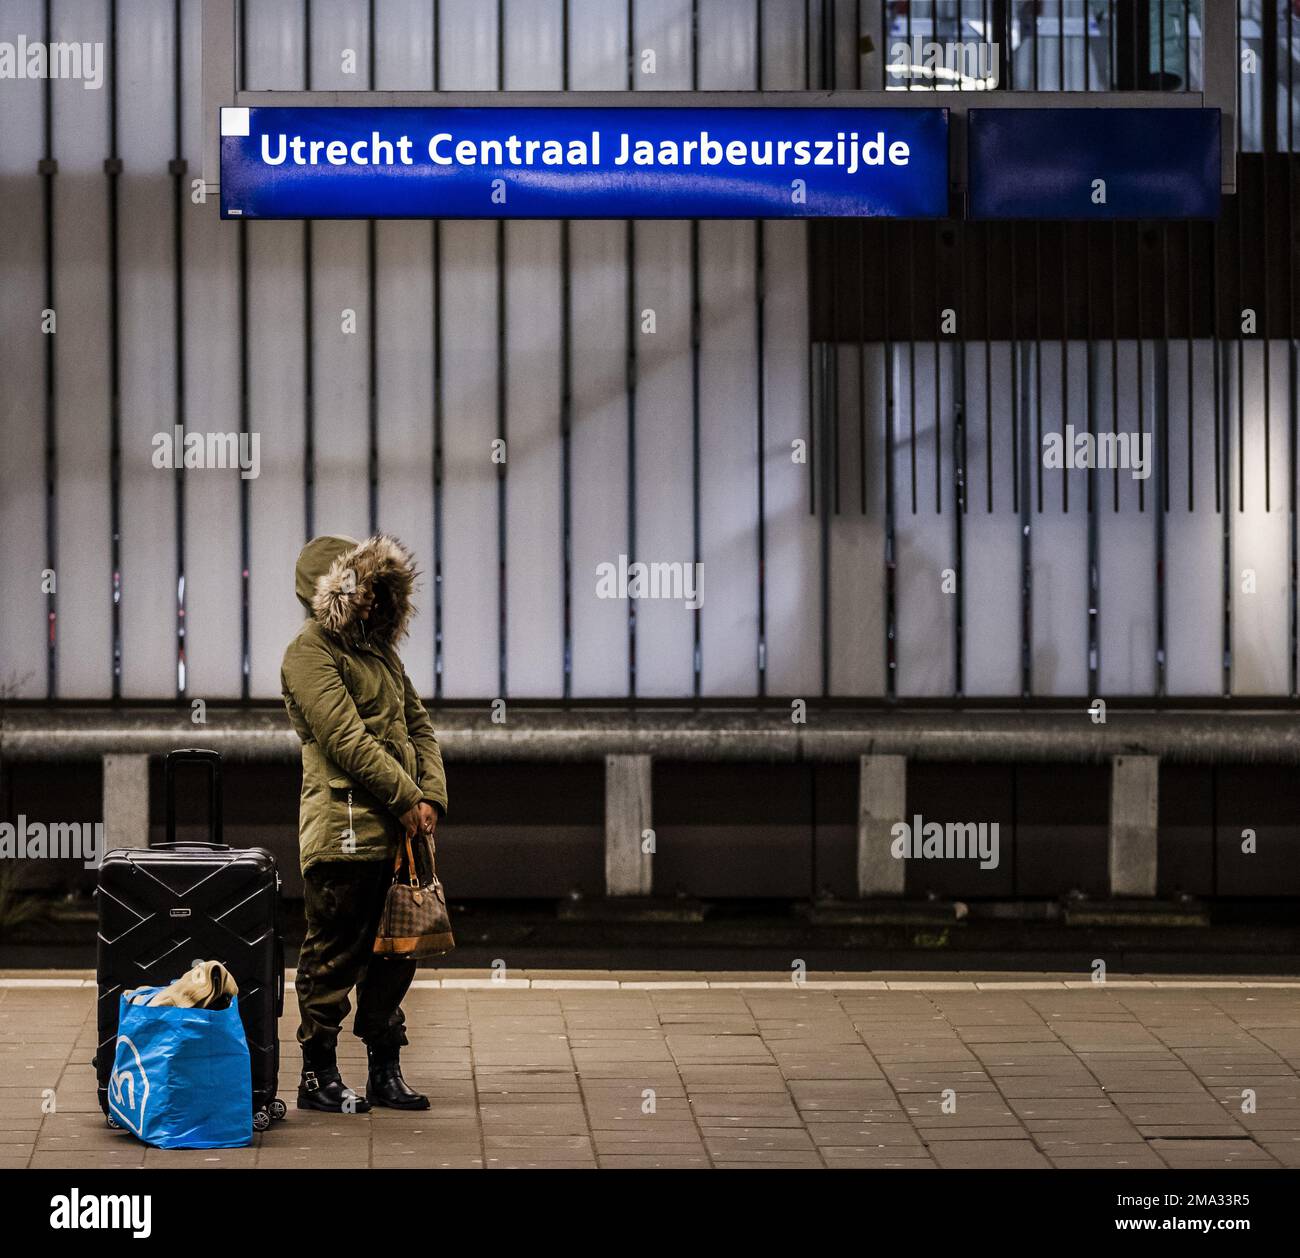 UTRECHT - Passagiere warten am Busbahnhof des Utrecht Central Station auf den Bus. Busfahrer, Fahrer und Dirigenten im regionalen Verkehr streiken nach einem gescheiterten Tarifvertrag. ANP REMKO DE WAAL niederlande raus - belgien raus Stockfoto